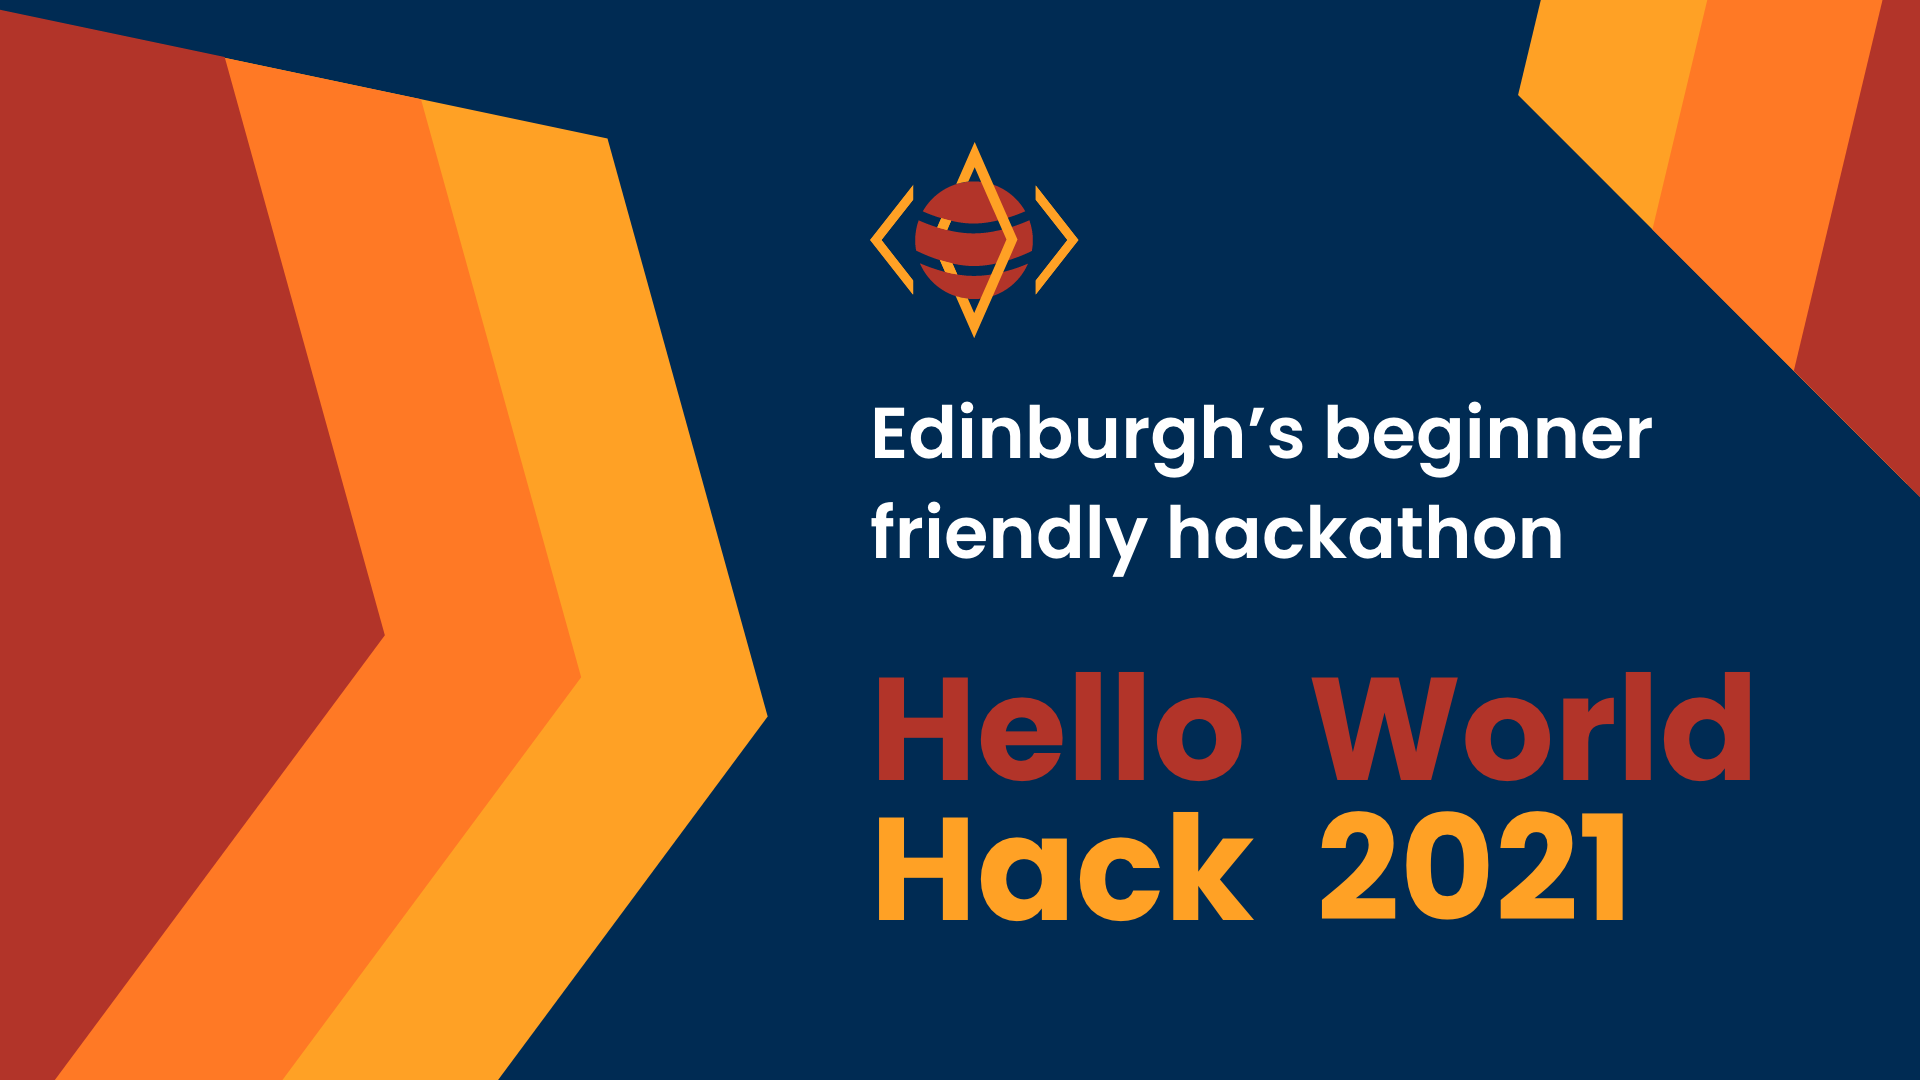 Hello world hack 2021 banner